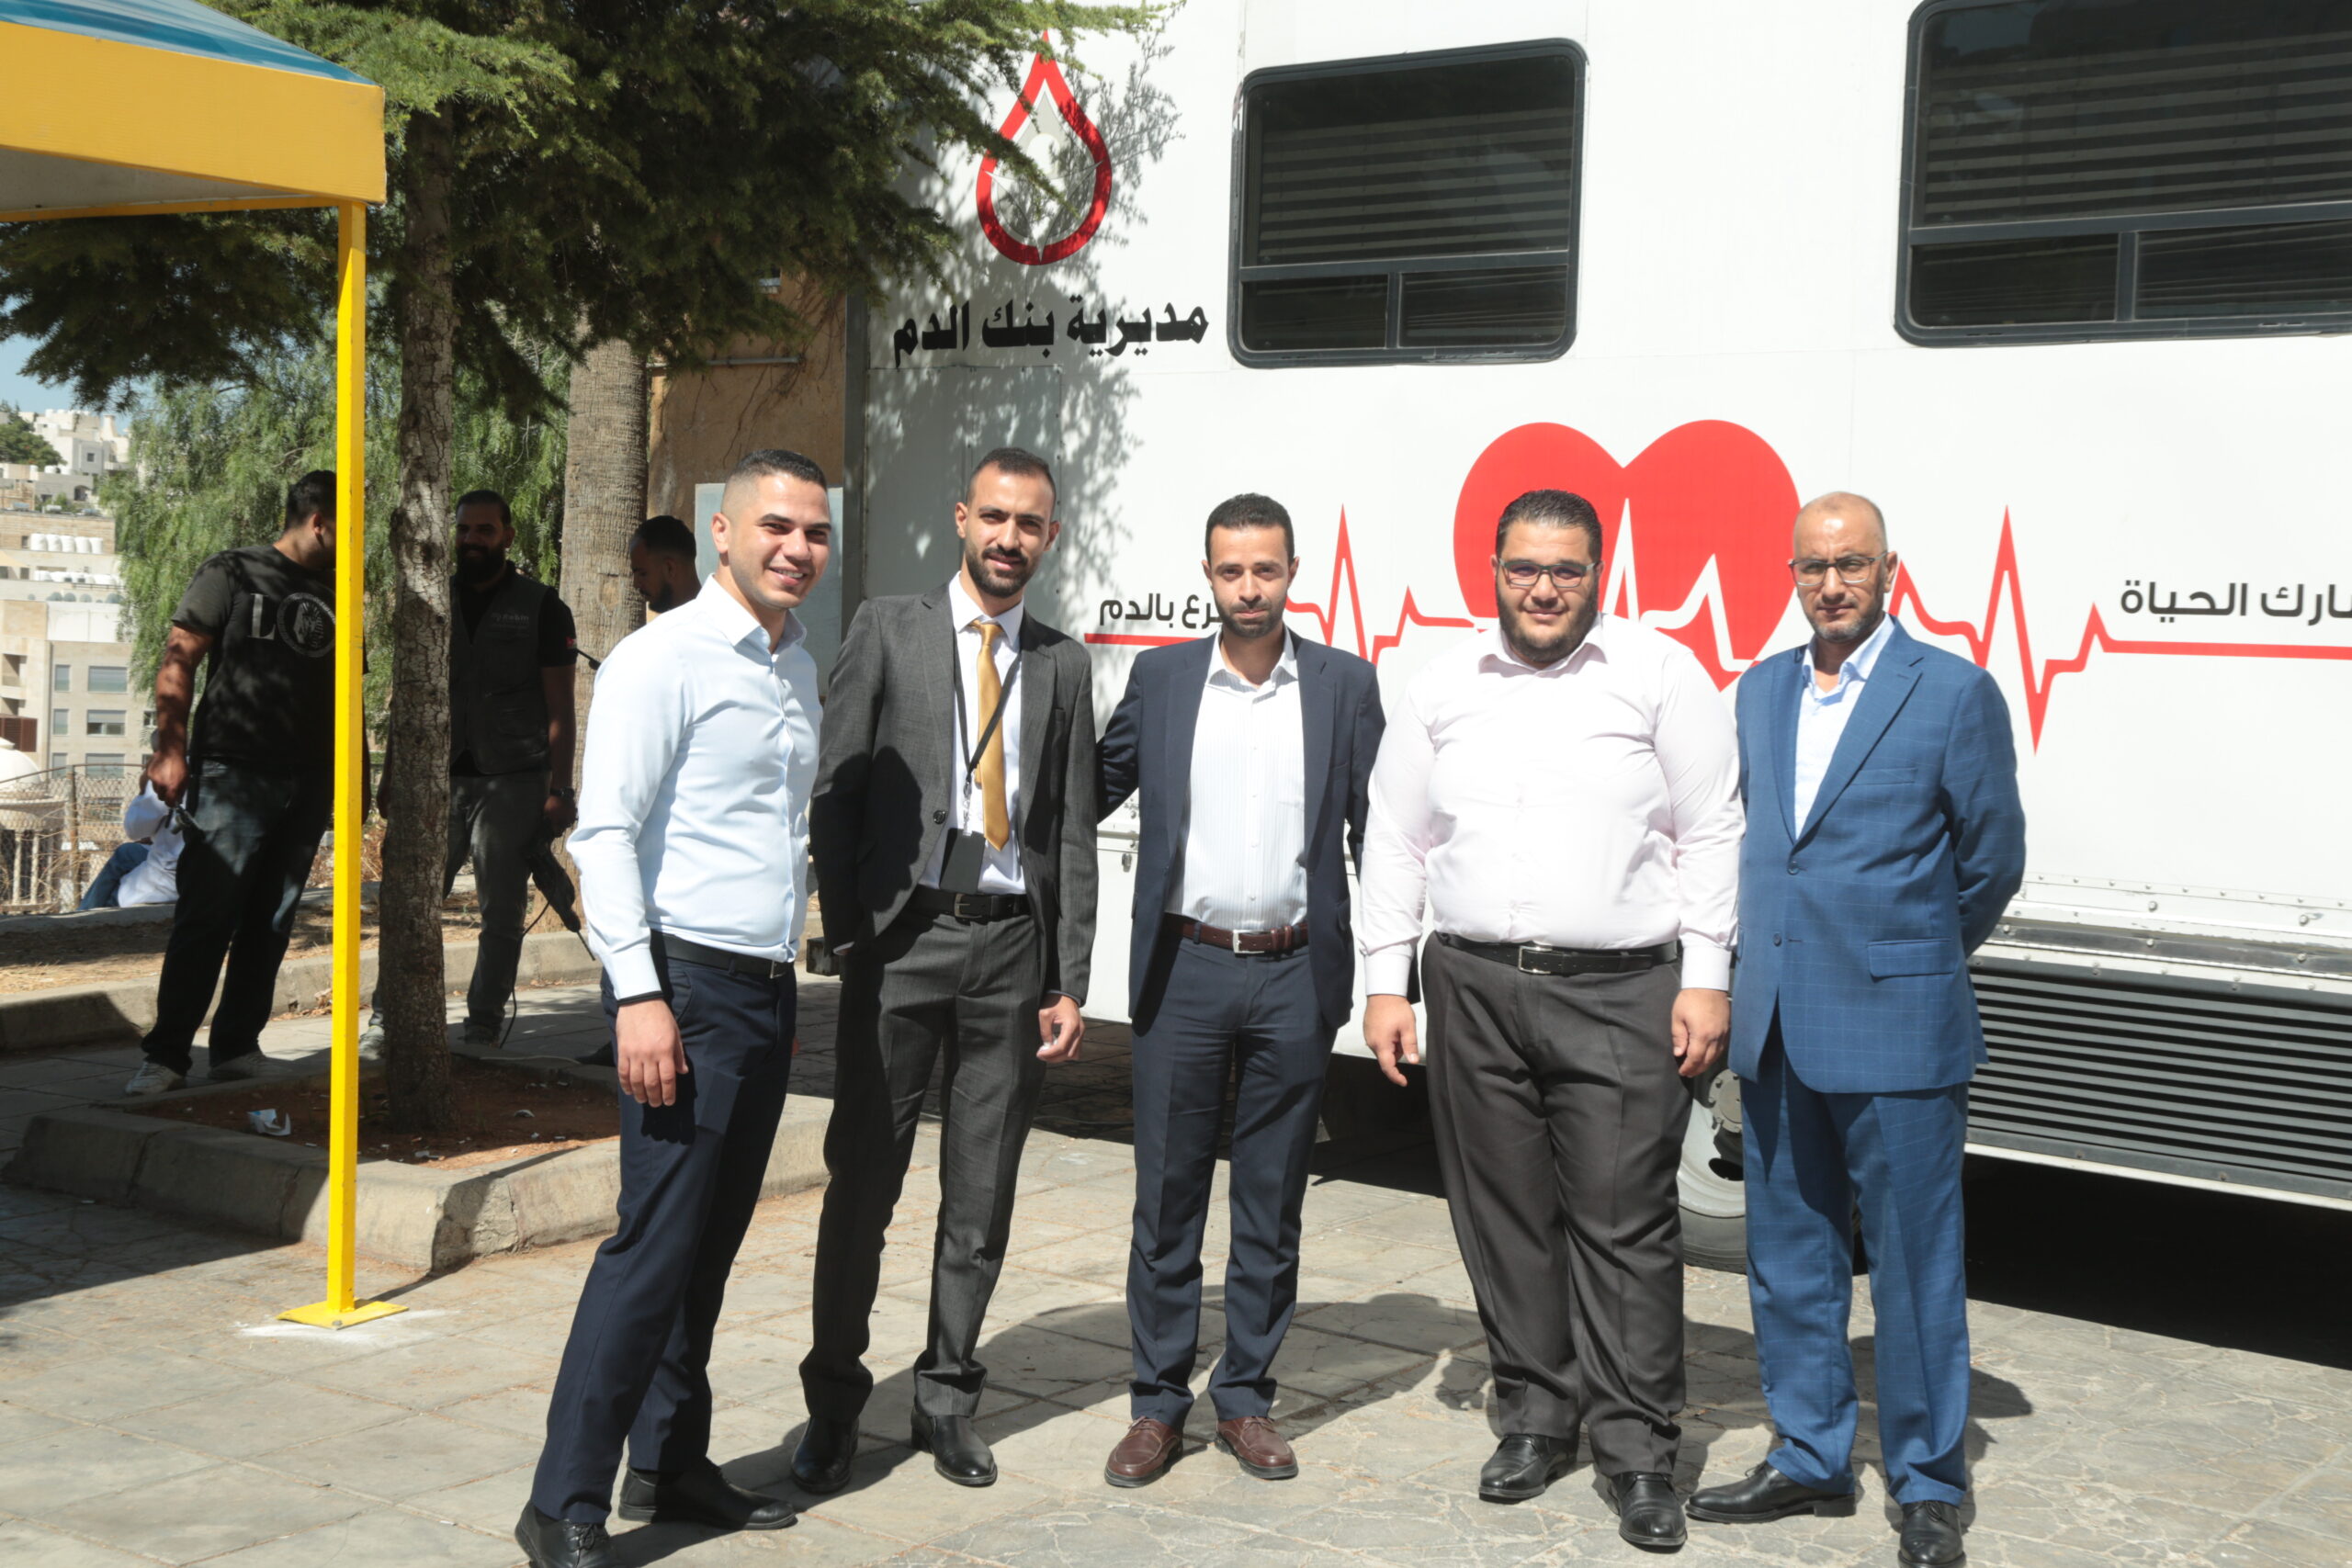 البنك الأهلي الأردني يطلق حملة التبرّع بالدم السنوية تحت شعار “شكرا لكل من يساهم بانقاذ حياة”